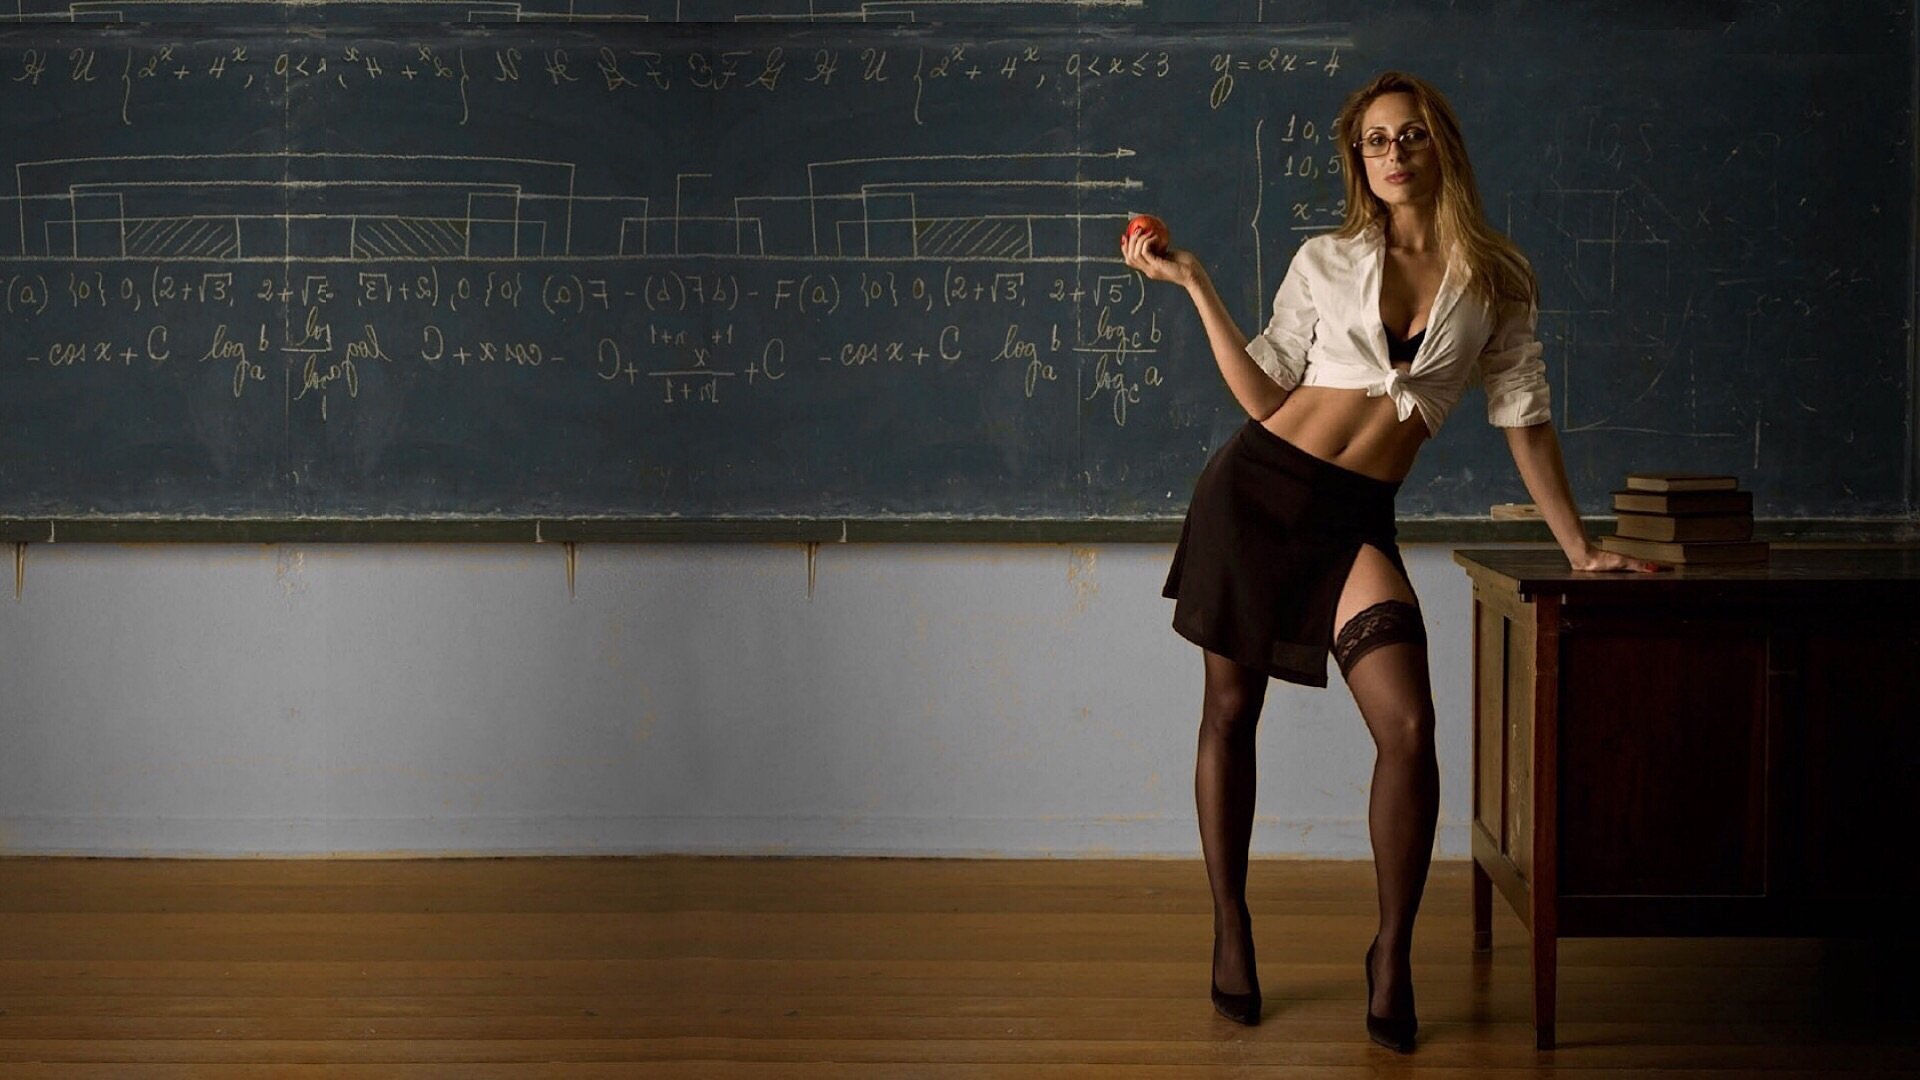 Секс Учительницы С Учеником На Уроке